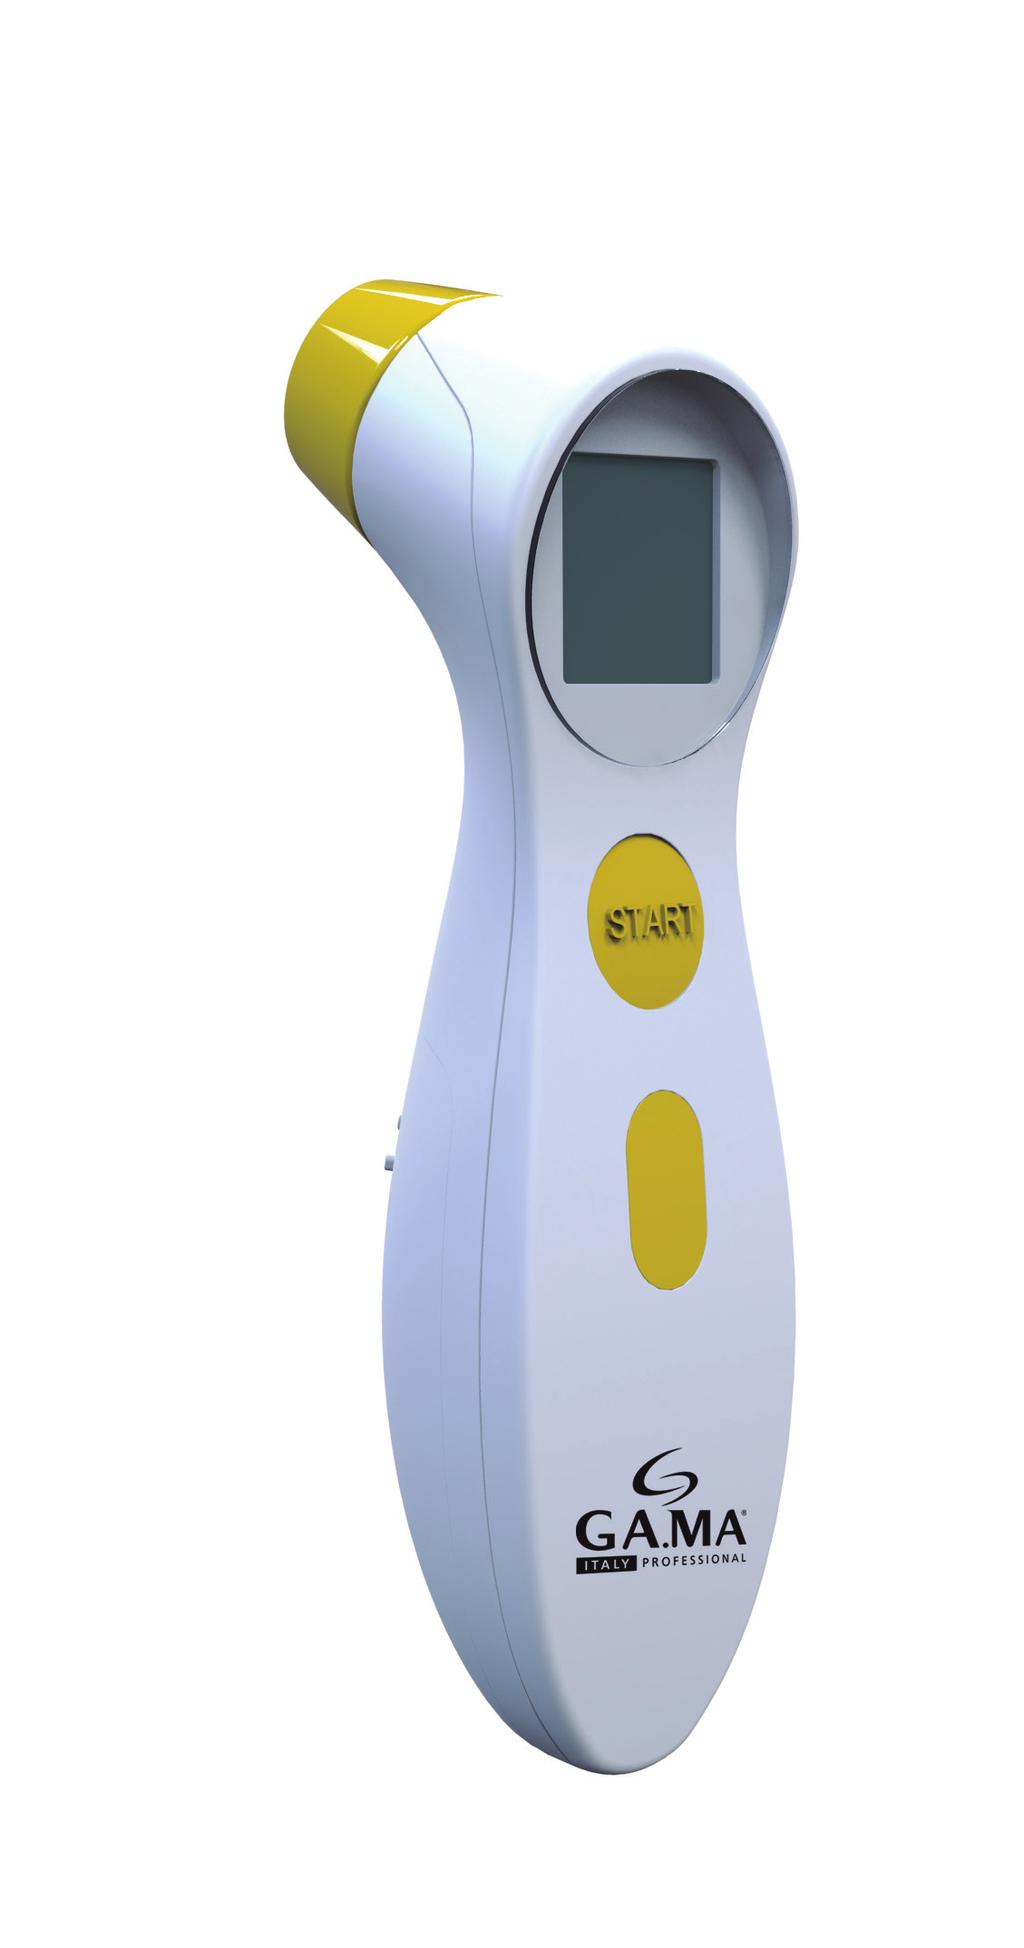 TERMÔMETRO DIGITAL INFRAVERMELHO EASYMED TESTA O termômetro digital infravermelho Easymed é multi-uso, podendo ser usado para medir a temperatura da testa e também de ambientes.